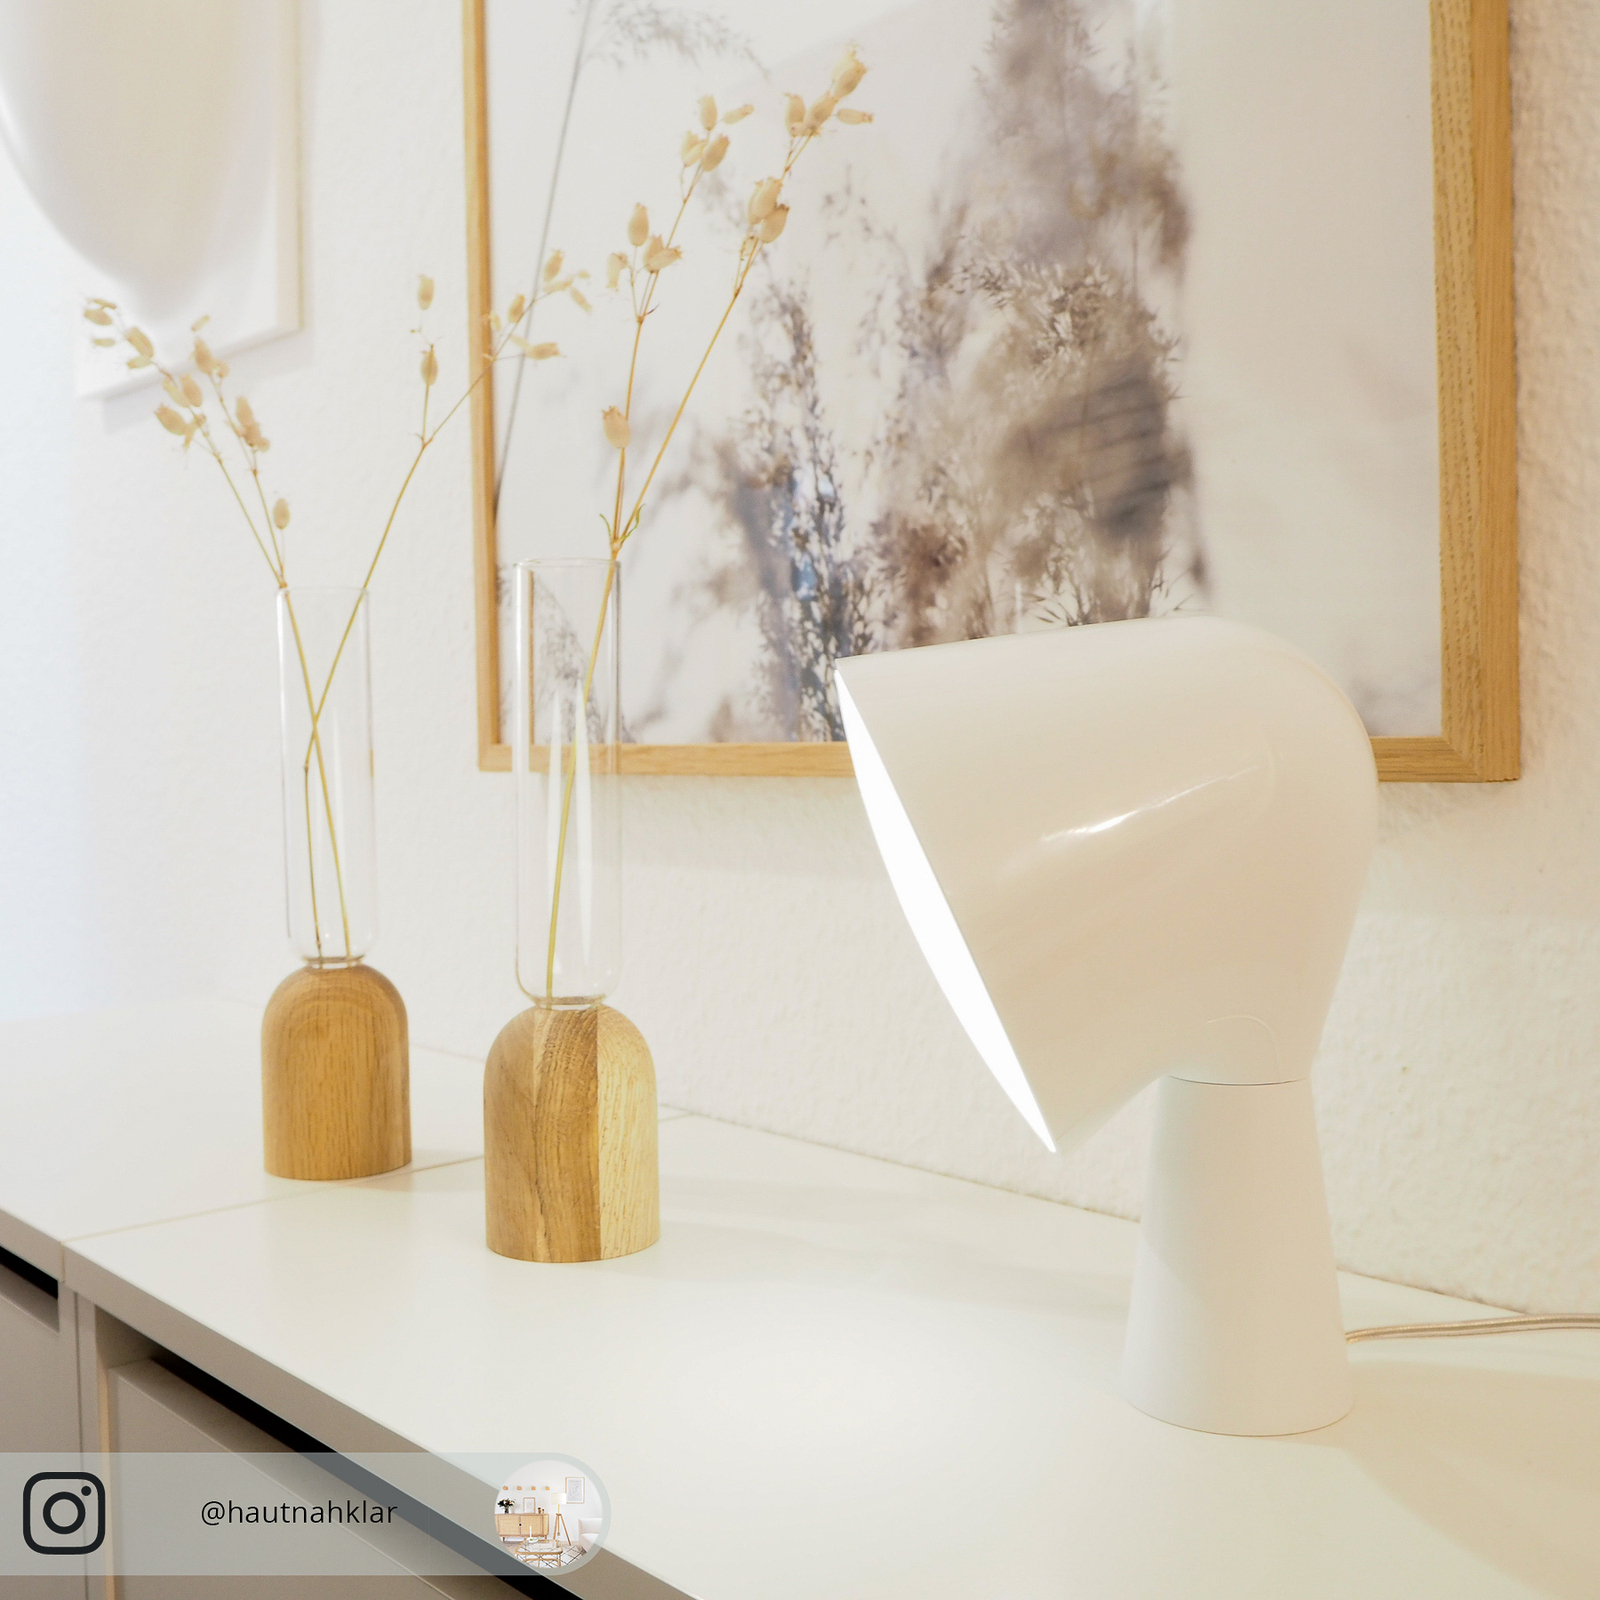 Foscarini Binic designer table lamp, white